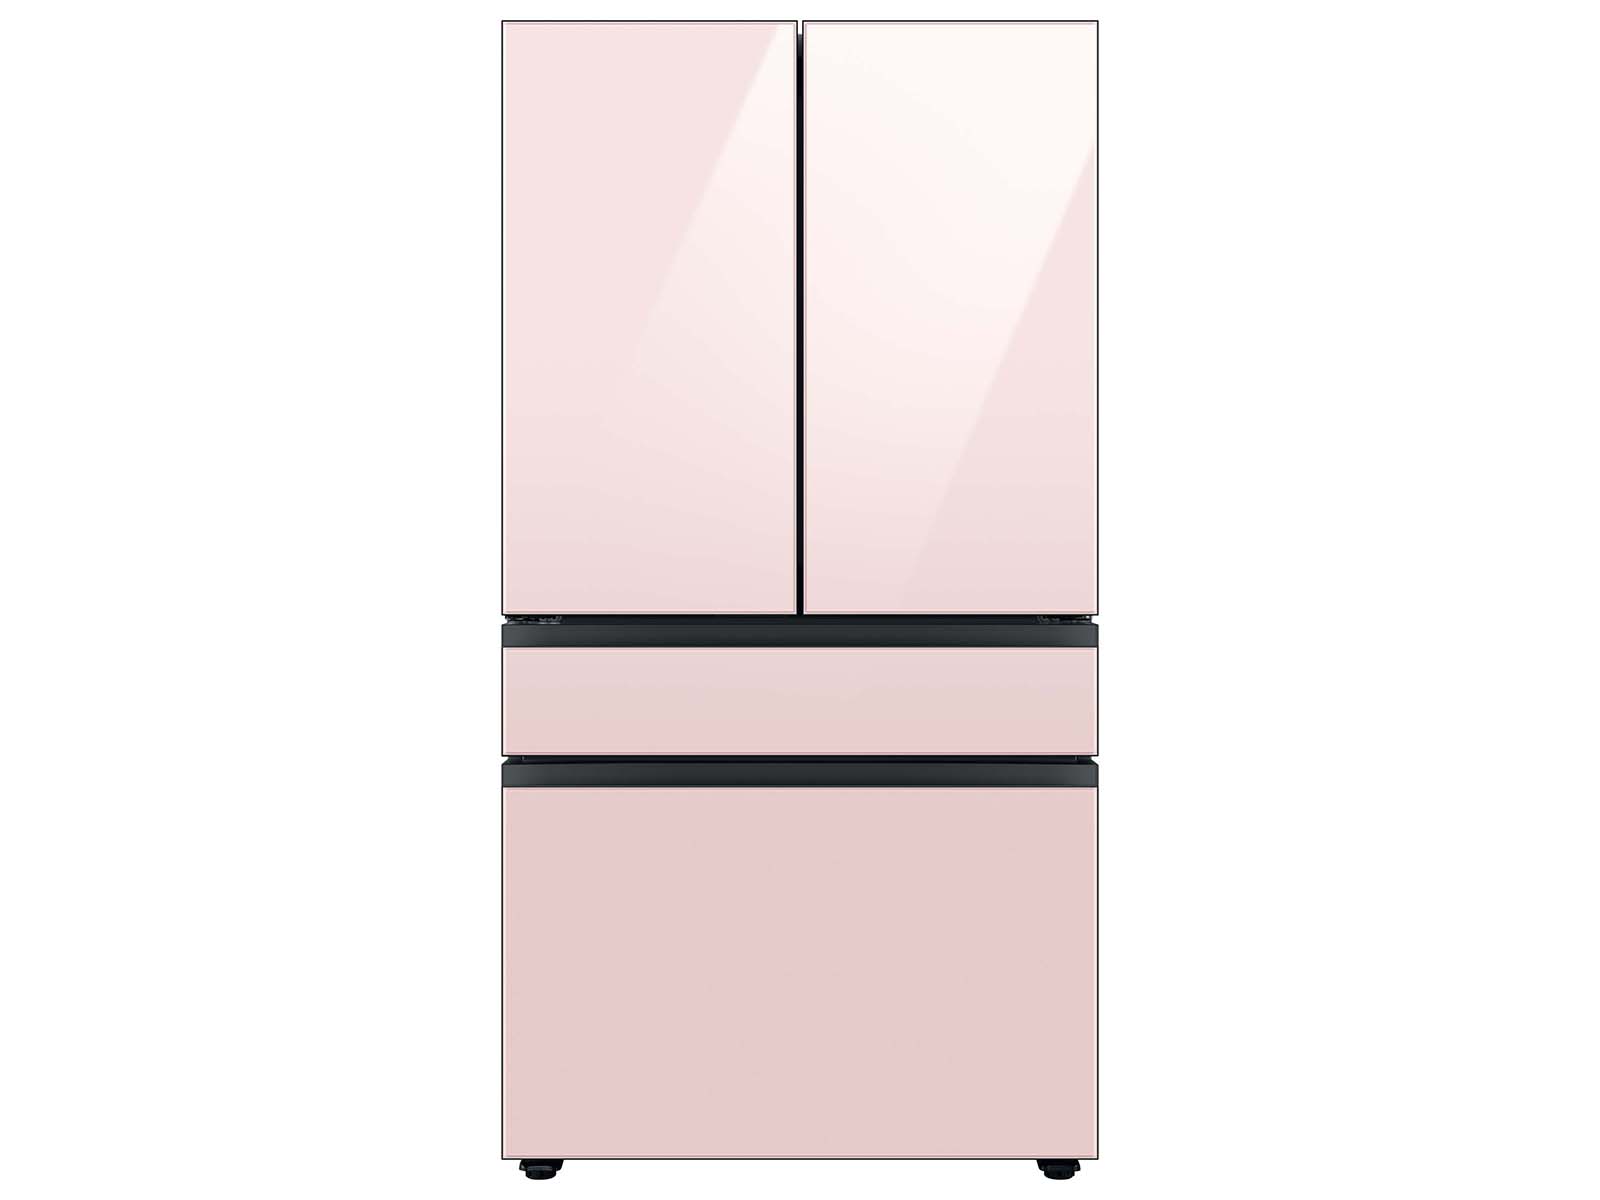 Bespoke 4-Door French Door Refrigerator (29 cu. ft.) with Customizable Door Panel Colors and Beverage Center&trade; in Rose Pink Glass